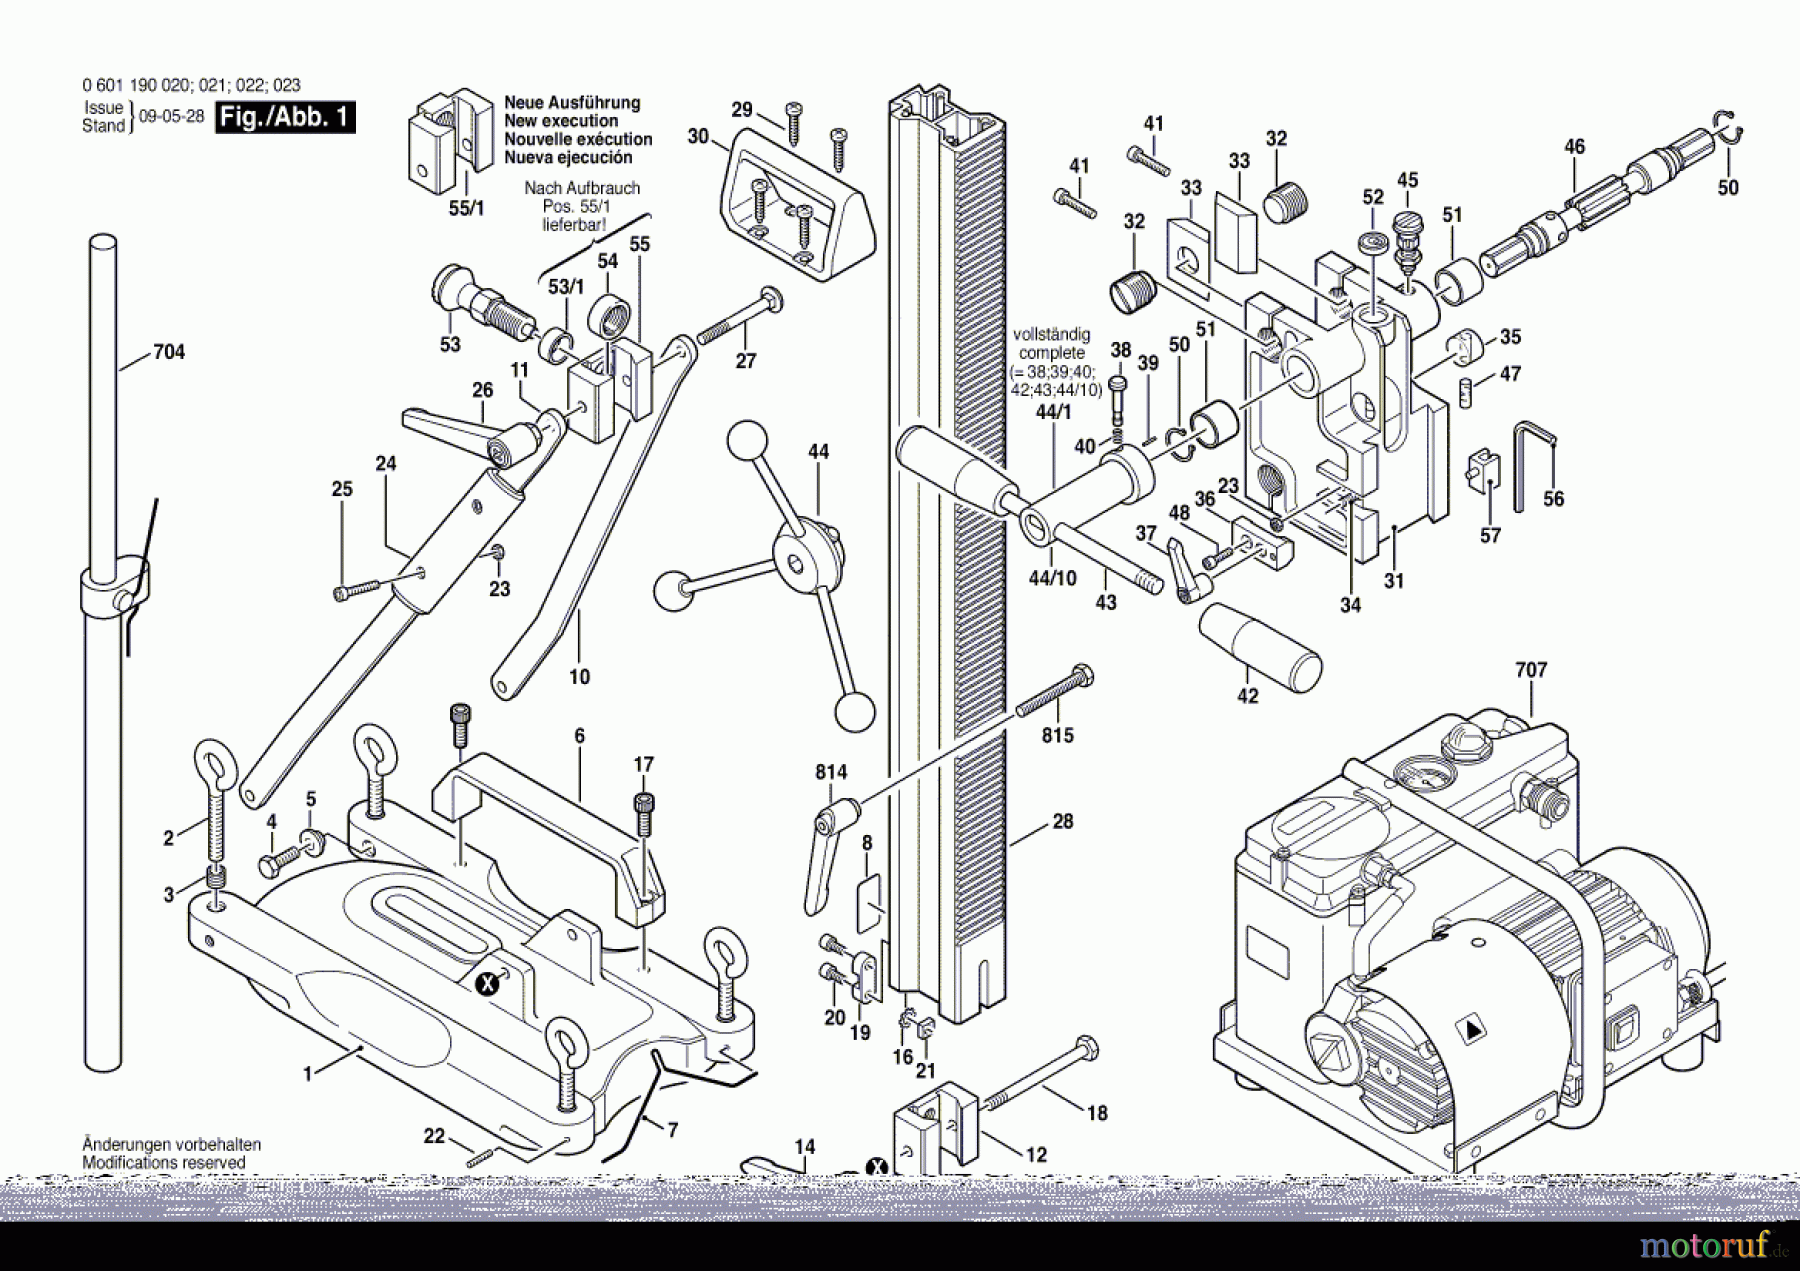  Bosch Werkzeug Bohrständer S 500 Seite 1